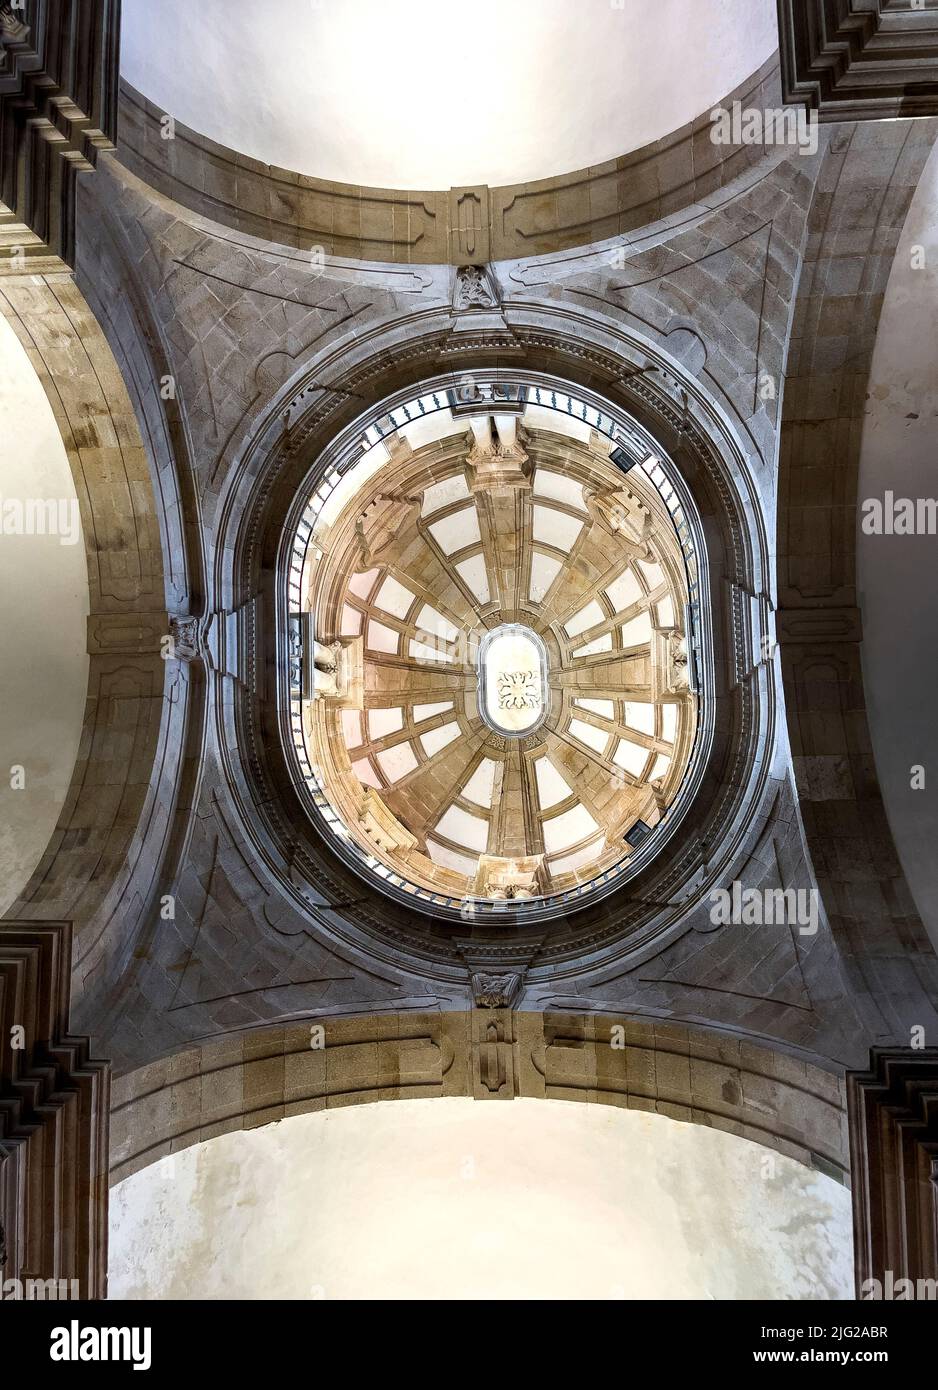 Vista interior de la cúpula del monasterio de San Miguel de Refojos (Sao Miguel de Refojos) fue construido en 1755 en estilo barroco para los benedictinos Foto de stock